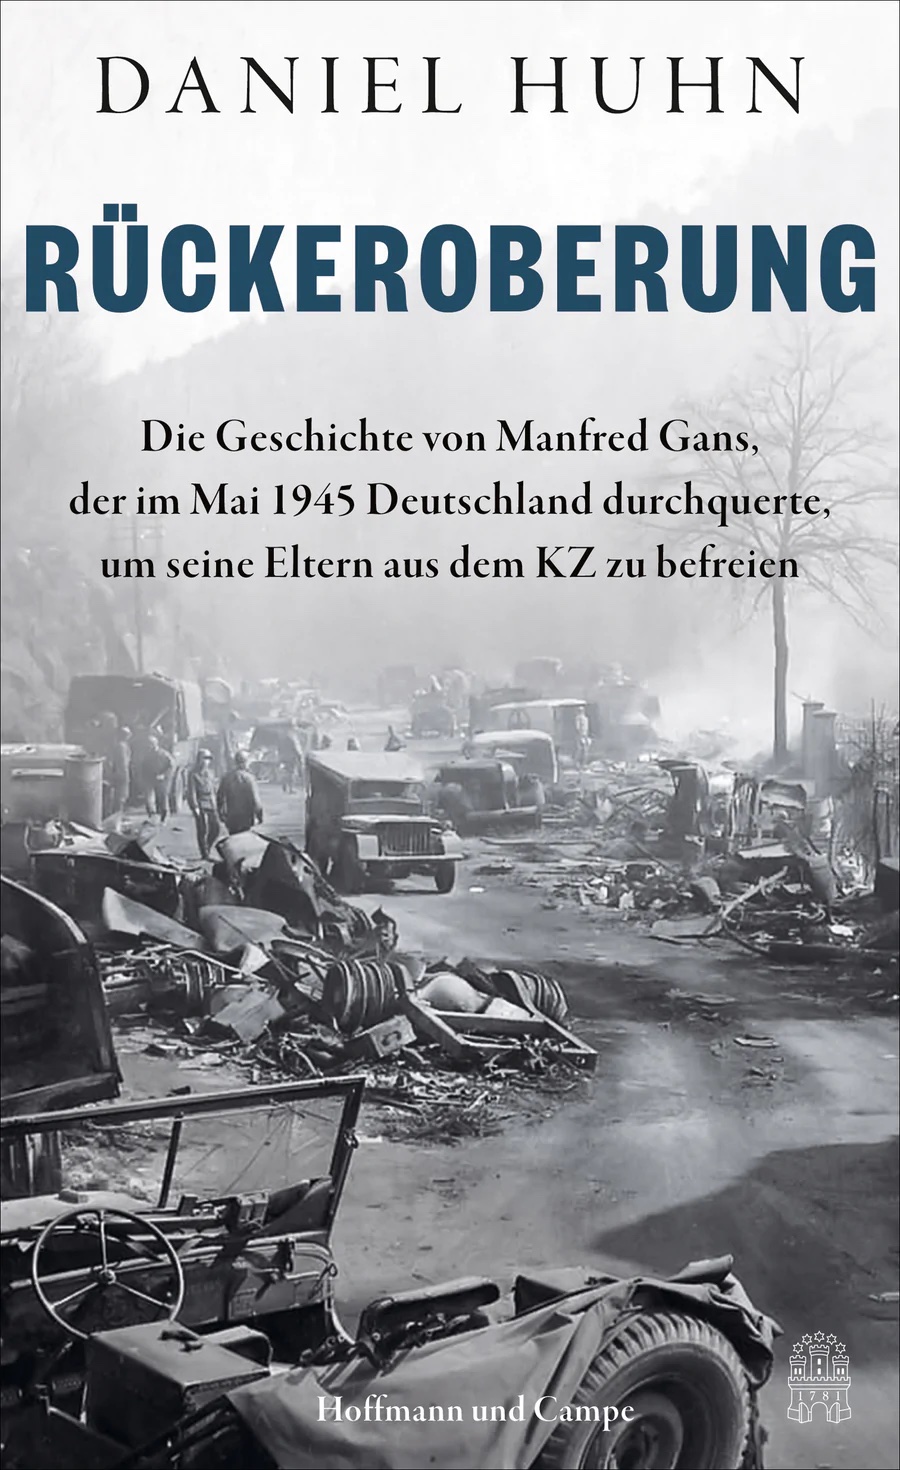 Recapture – New Books in German